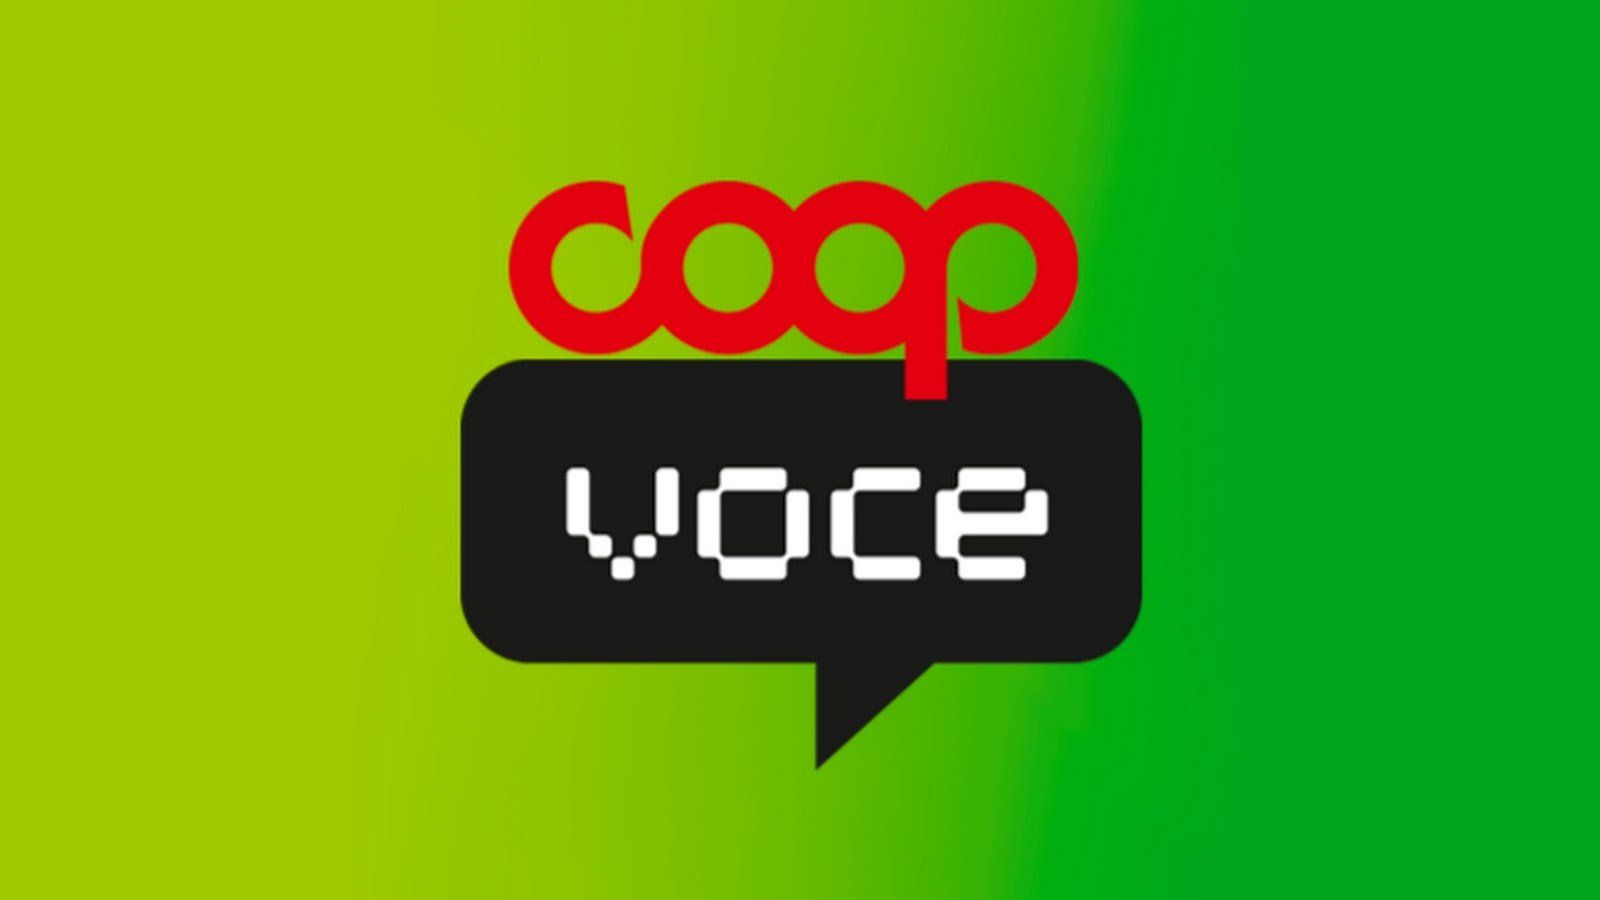 CoopVoce: scontro con TIM e Vodafone, arrivano offerte da 3 euro con giga e minuti 